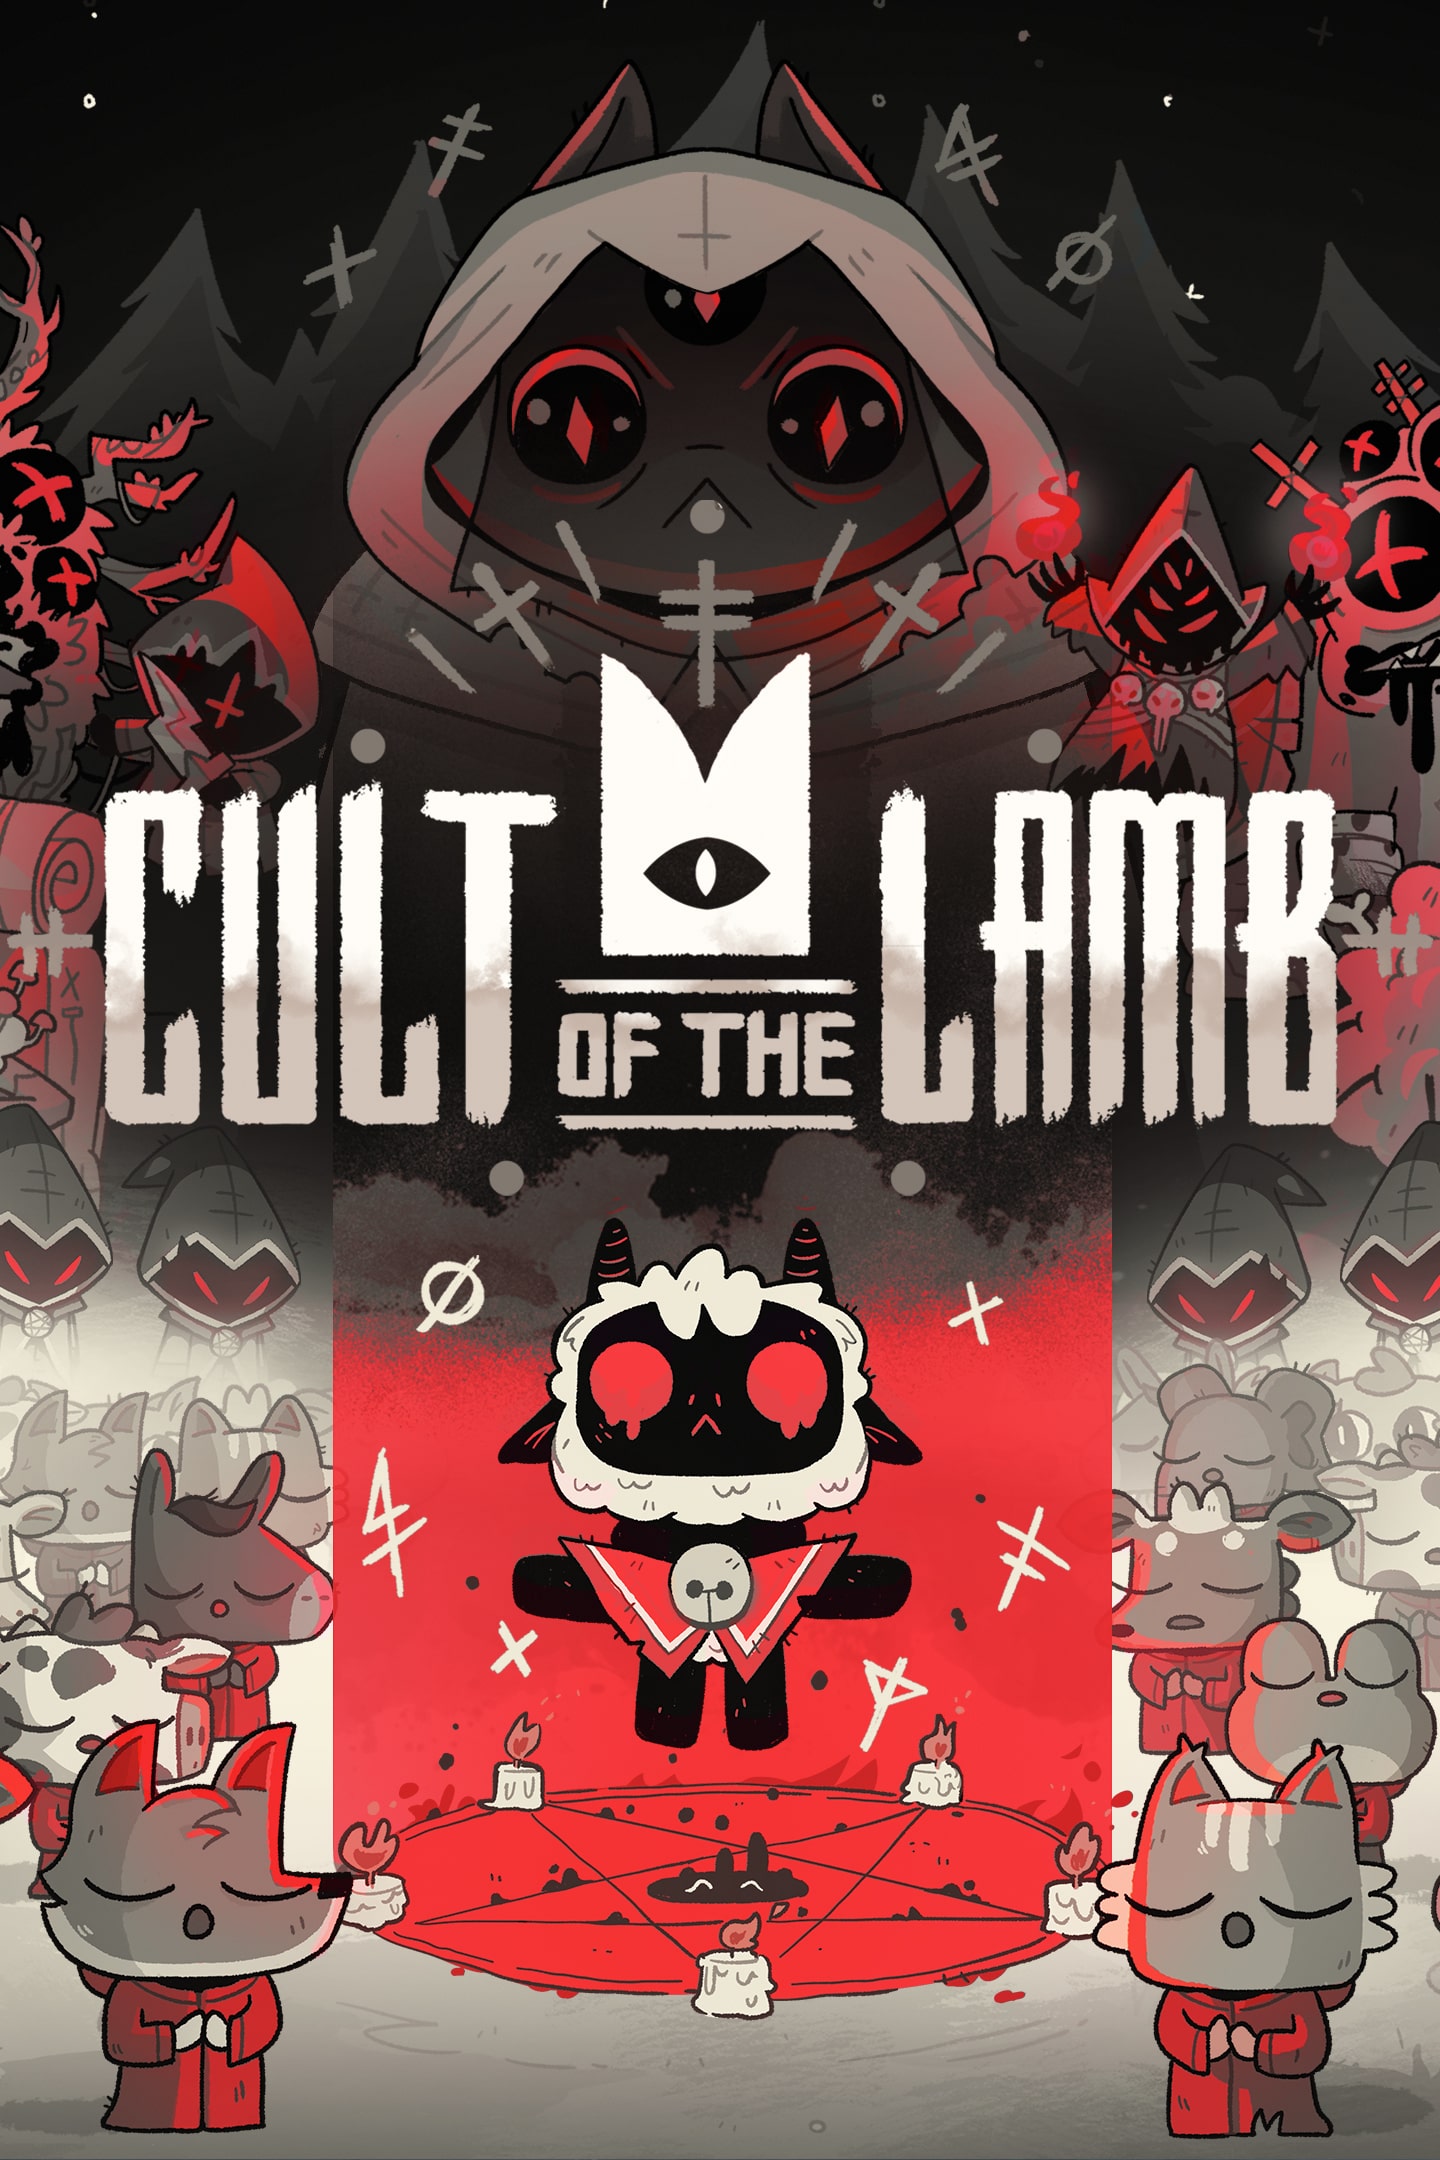 Cult of Lamb the